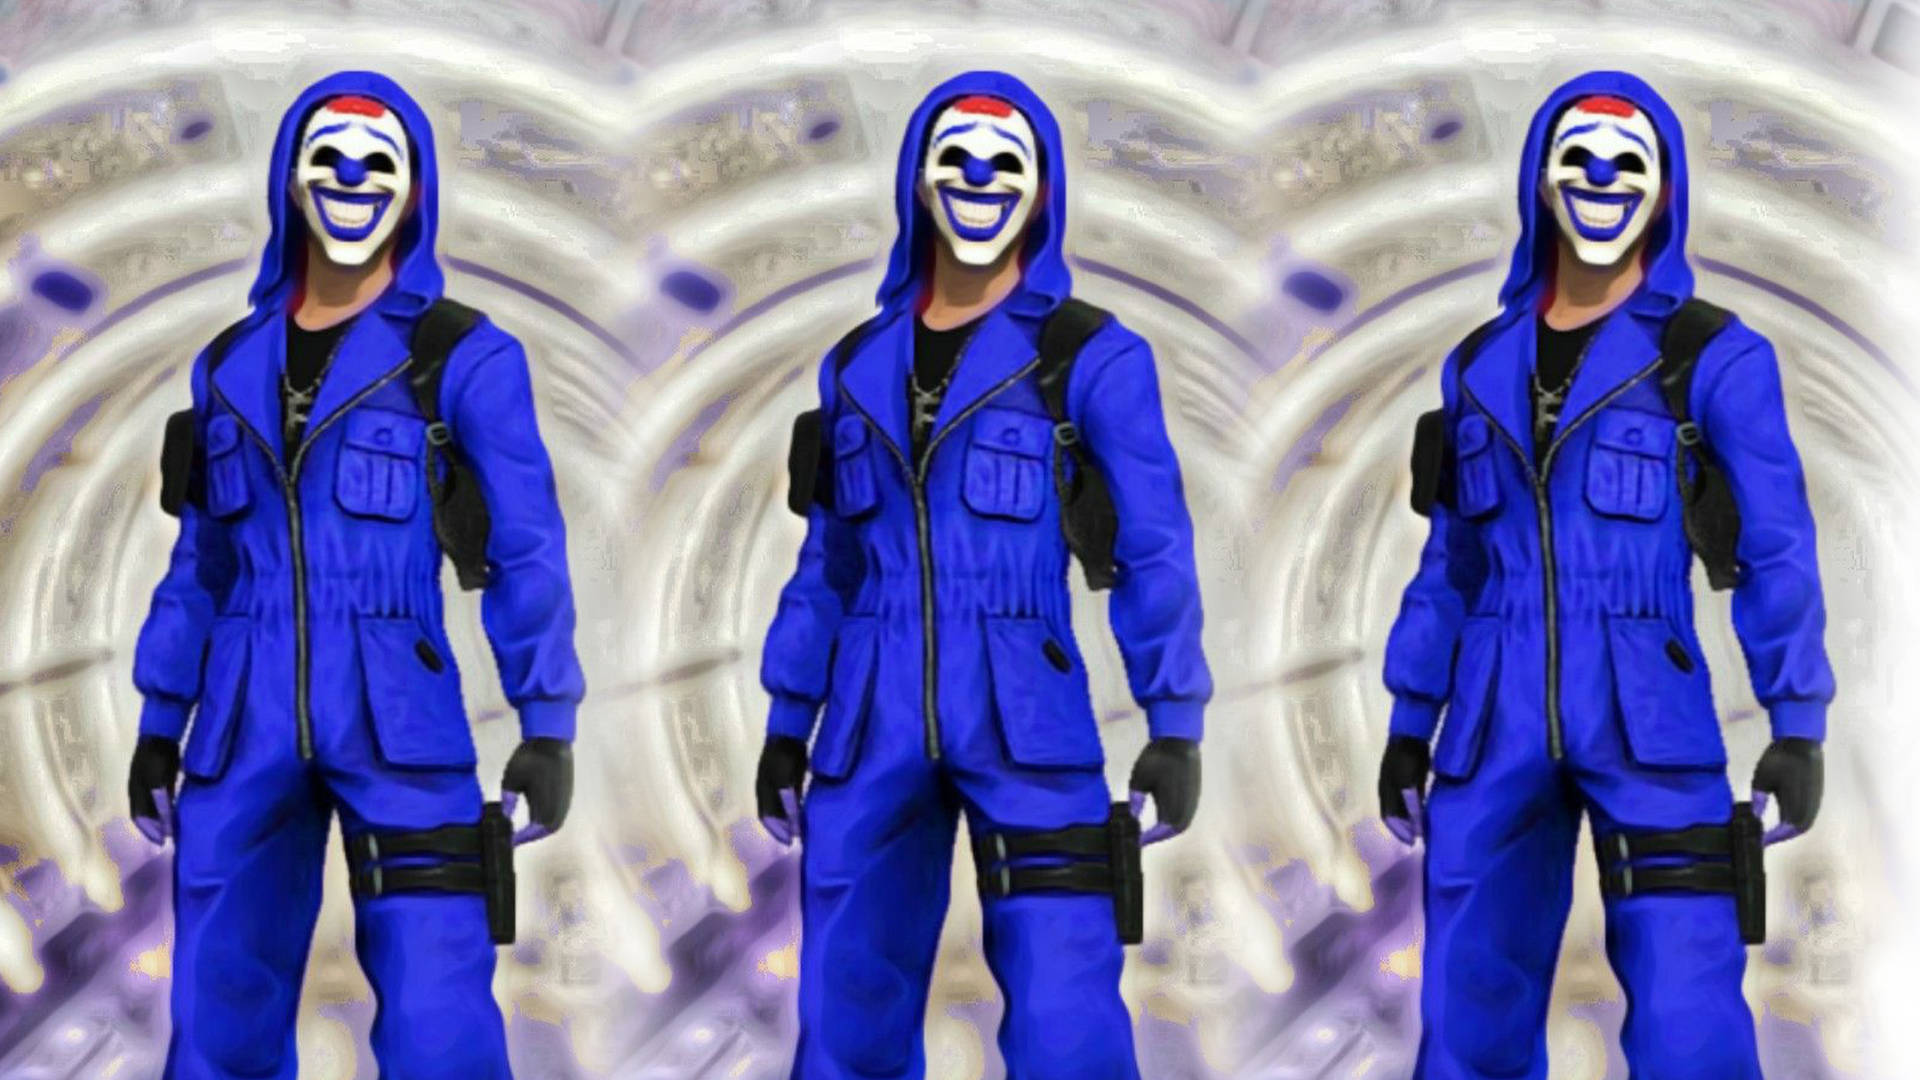 Three Blue Criminal Bundle Characters Desktop Picture